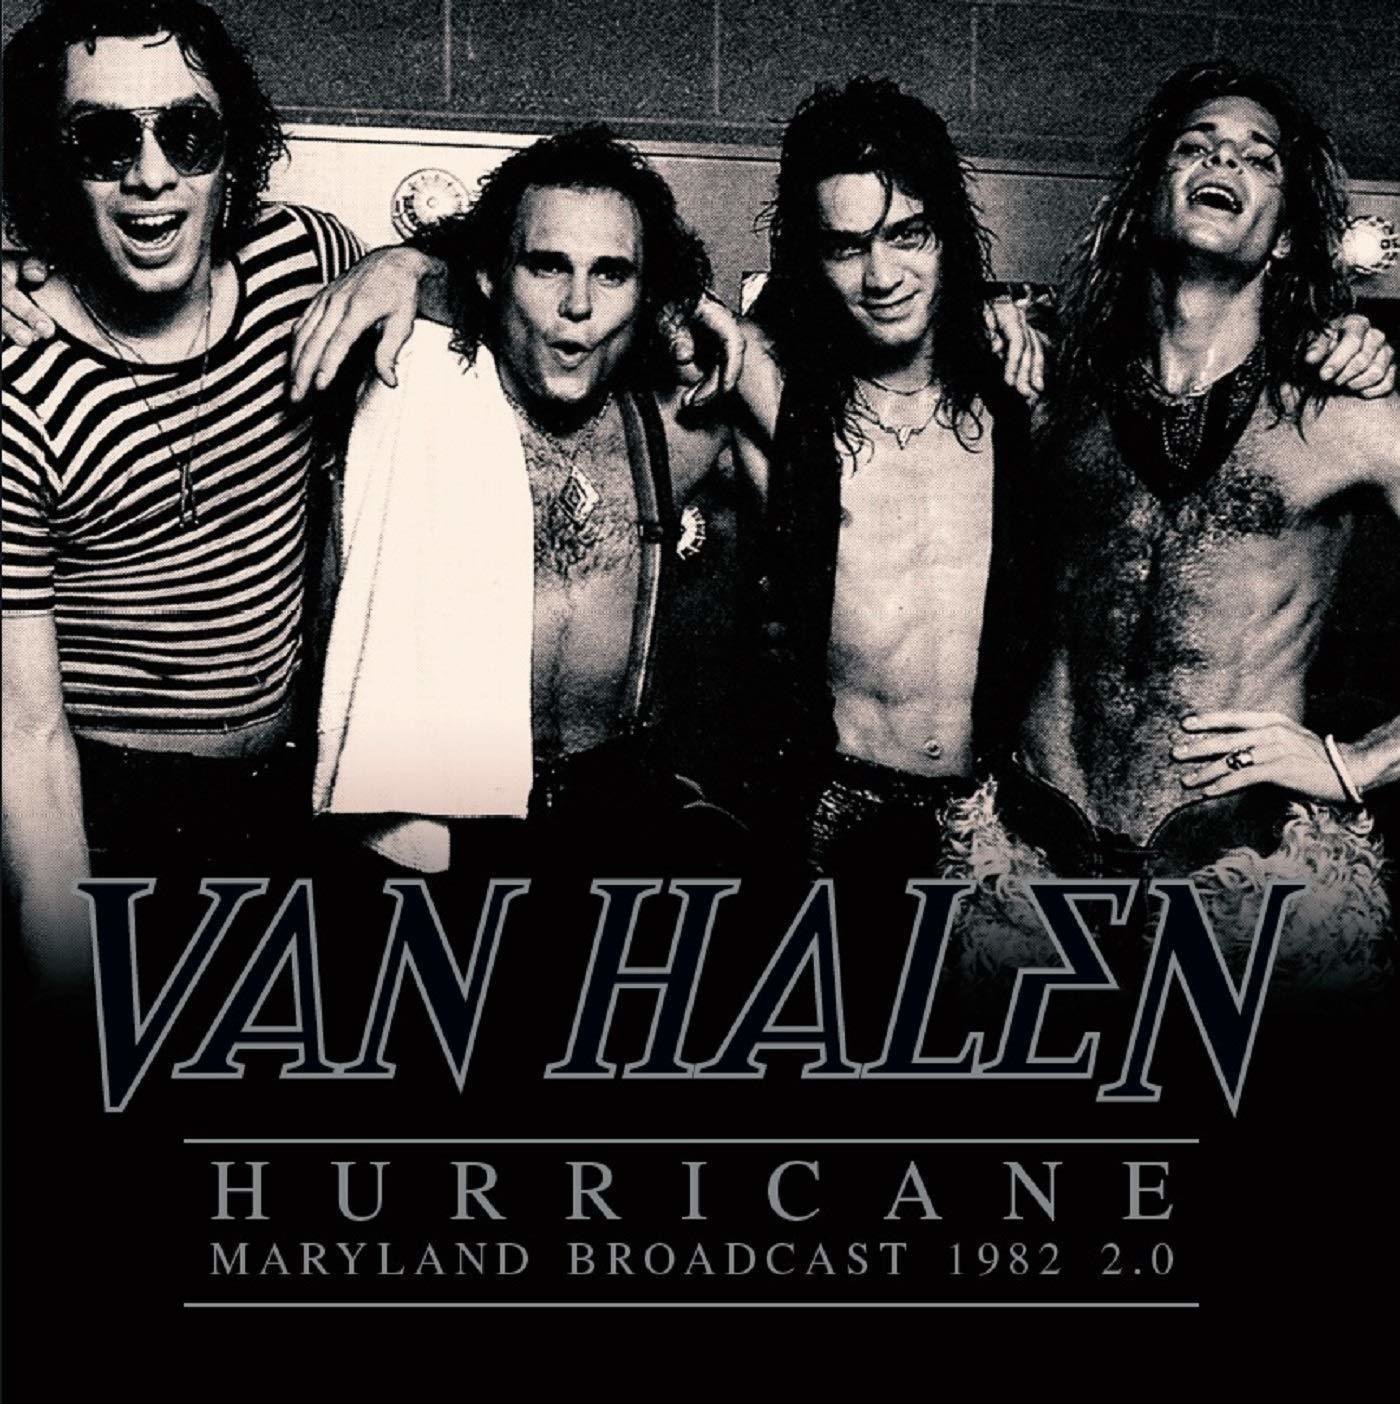 Vinyl Record Van Halen - Hurricane - Maryland Broadcast 1982 2.0 (2 LP)